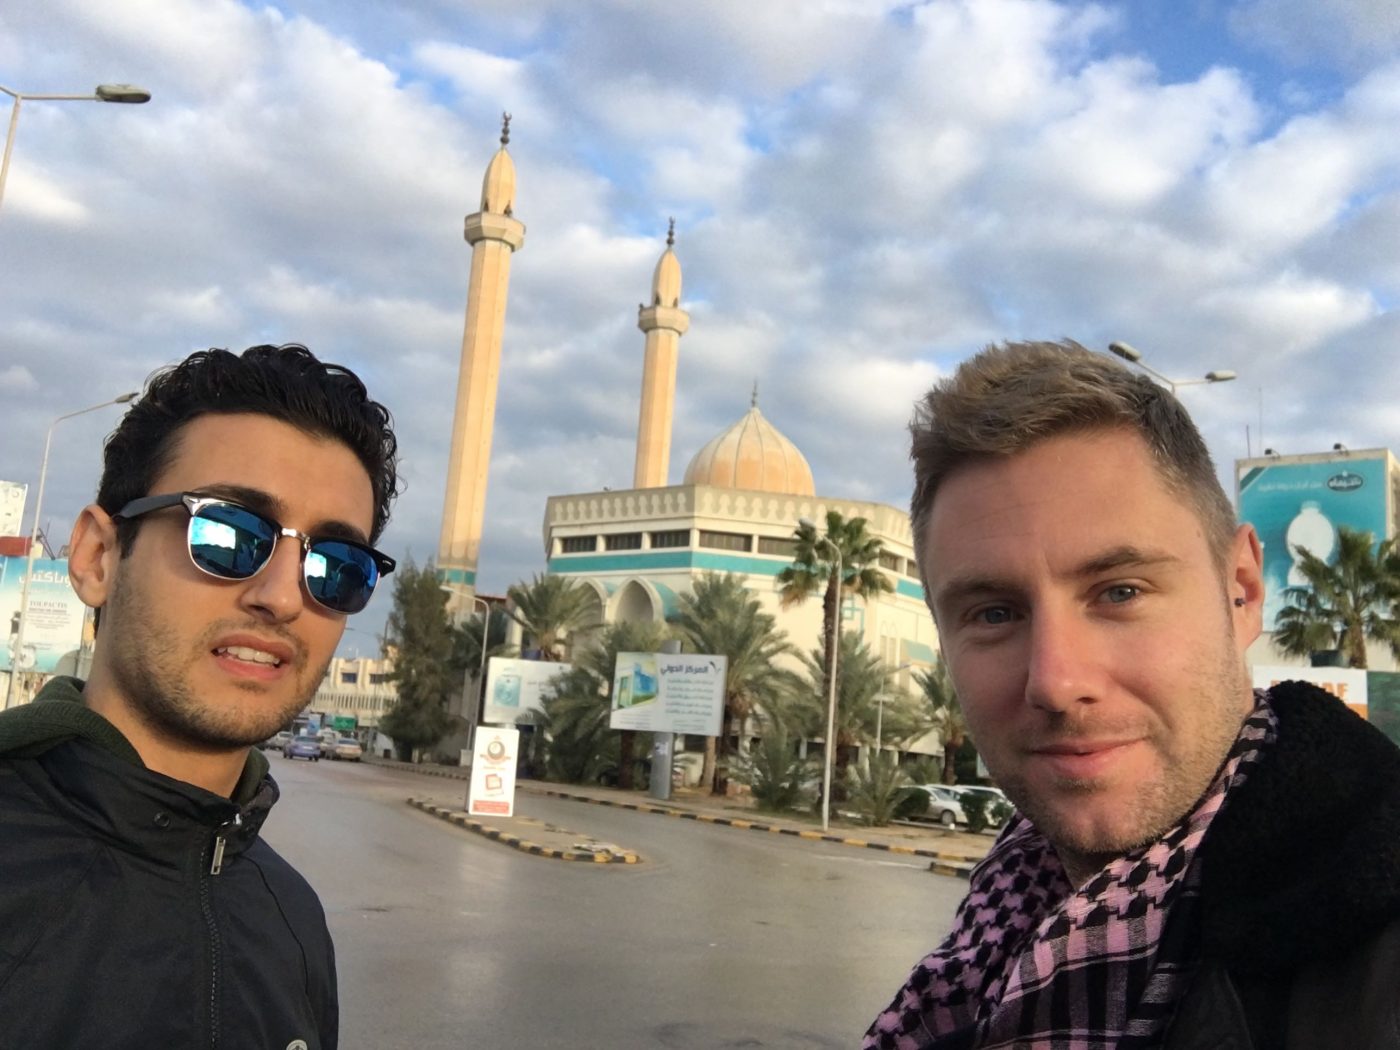 Visiting Libya